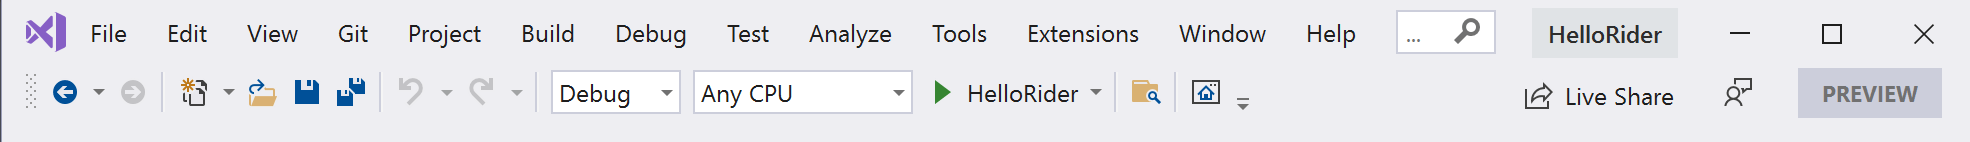 Visual Studio default toolbar